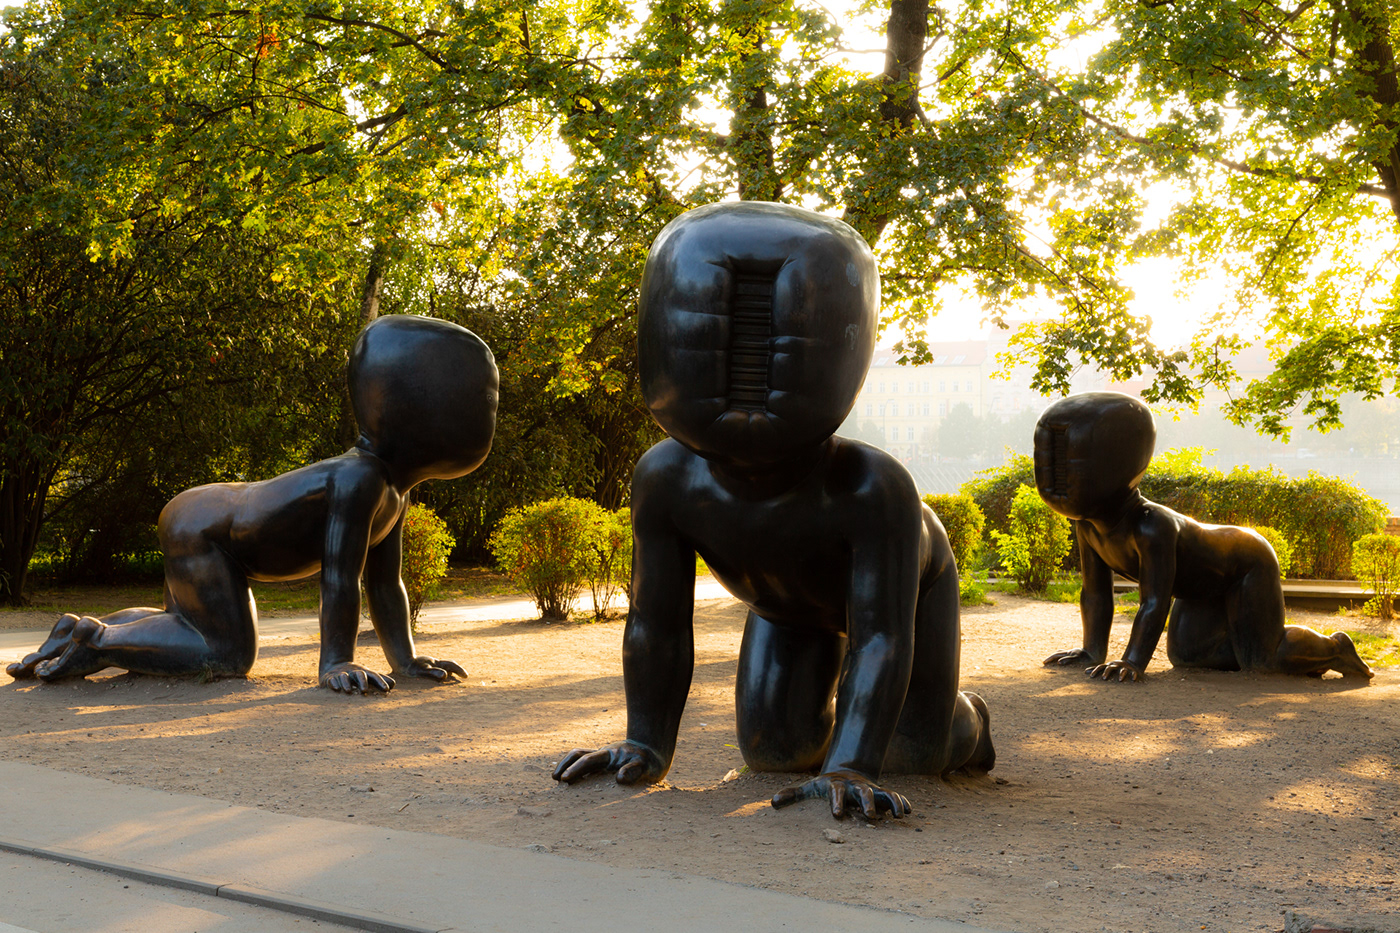 david cerny prague Czech praga prag sculpture